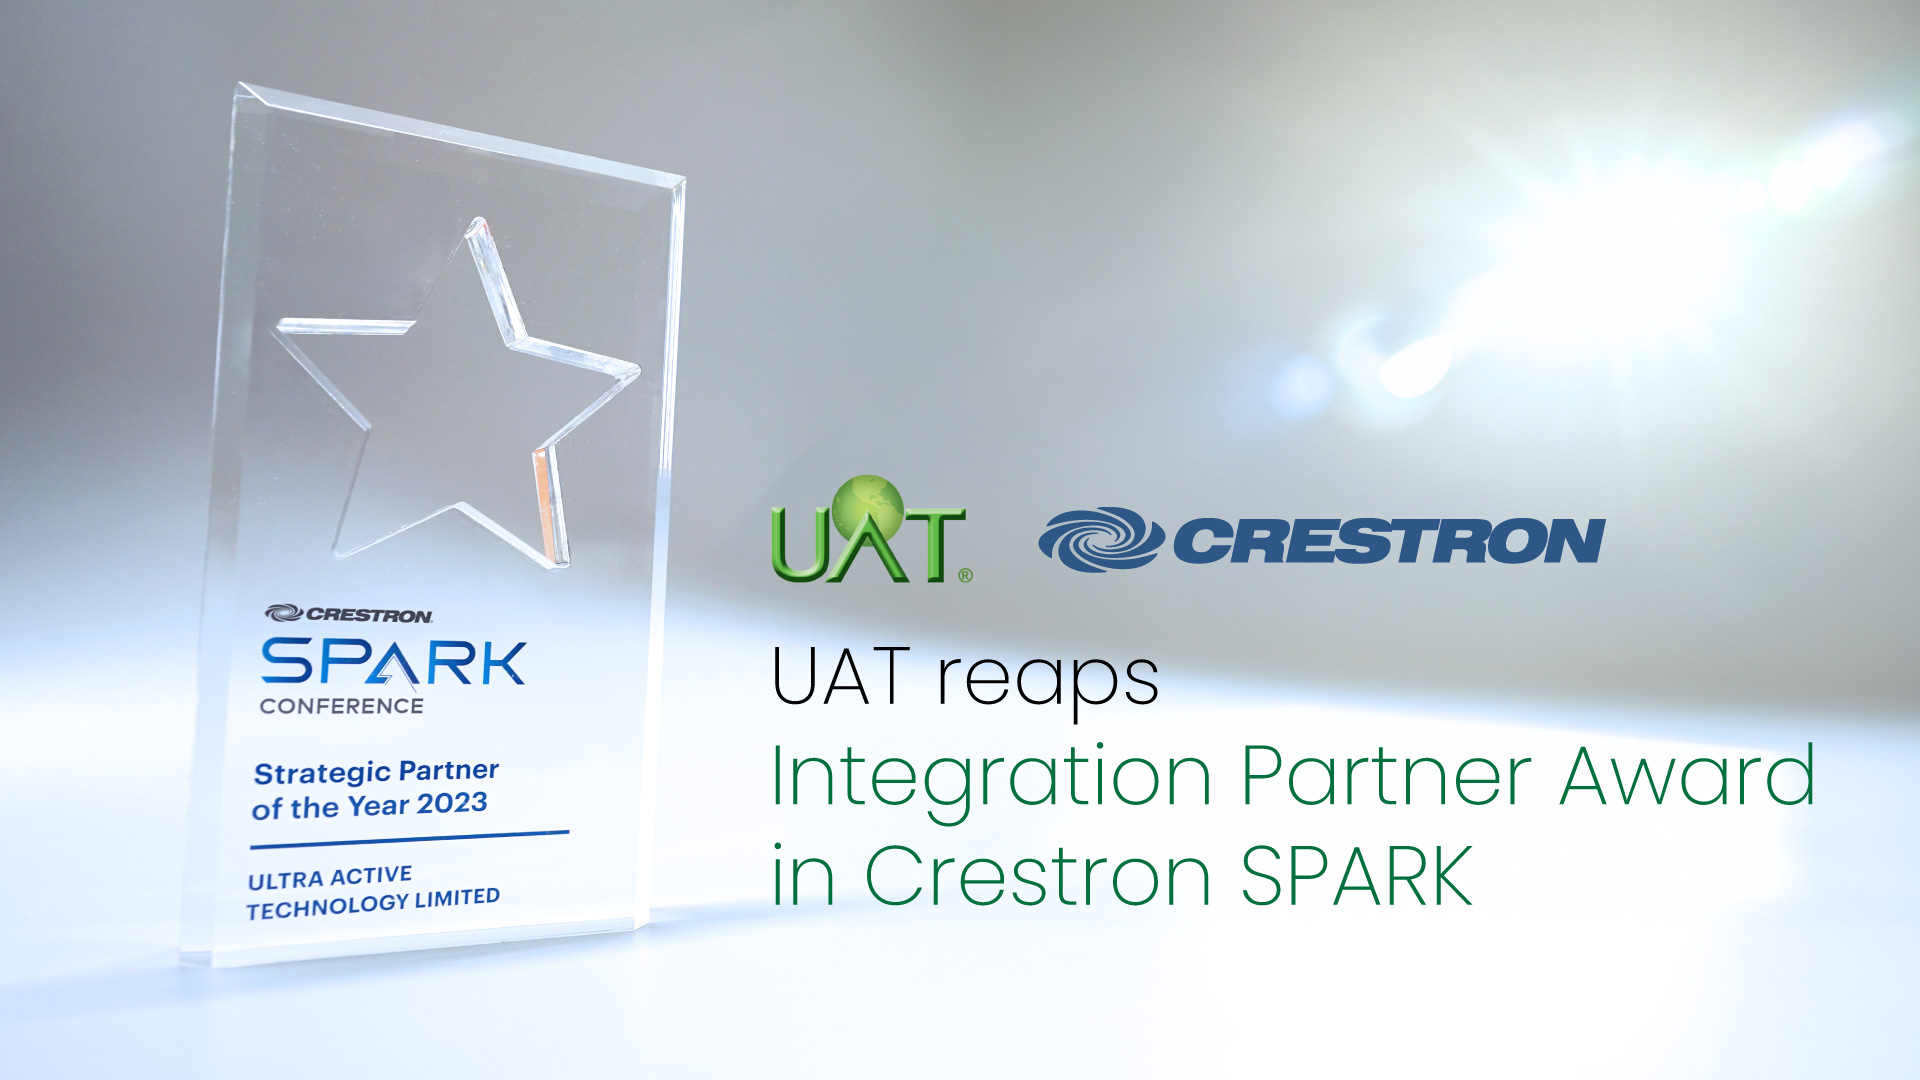 UAT reaps Integration Partner Award in Crestron SPARK